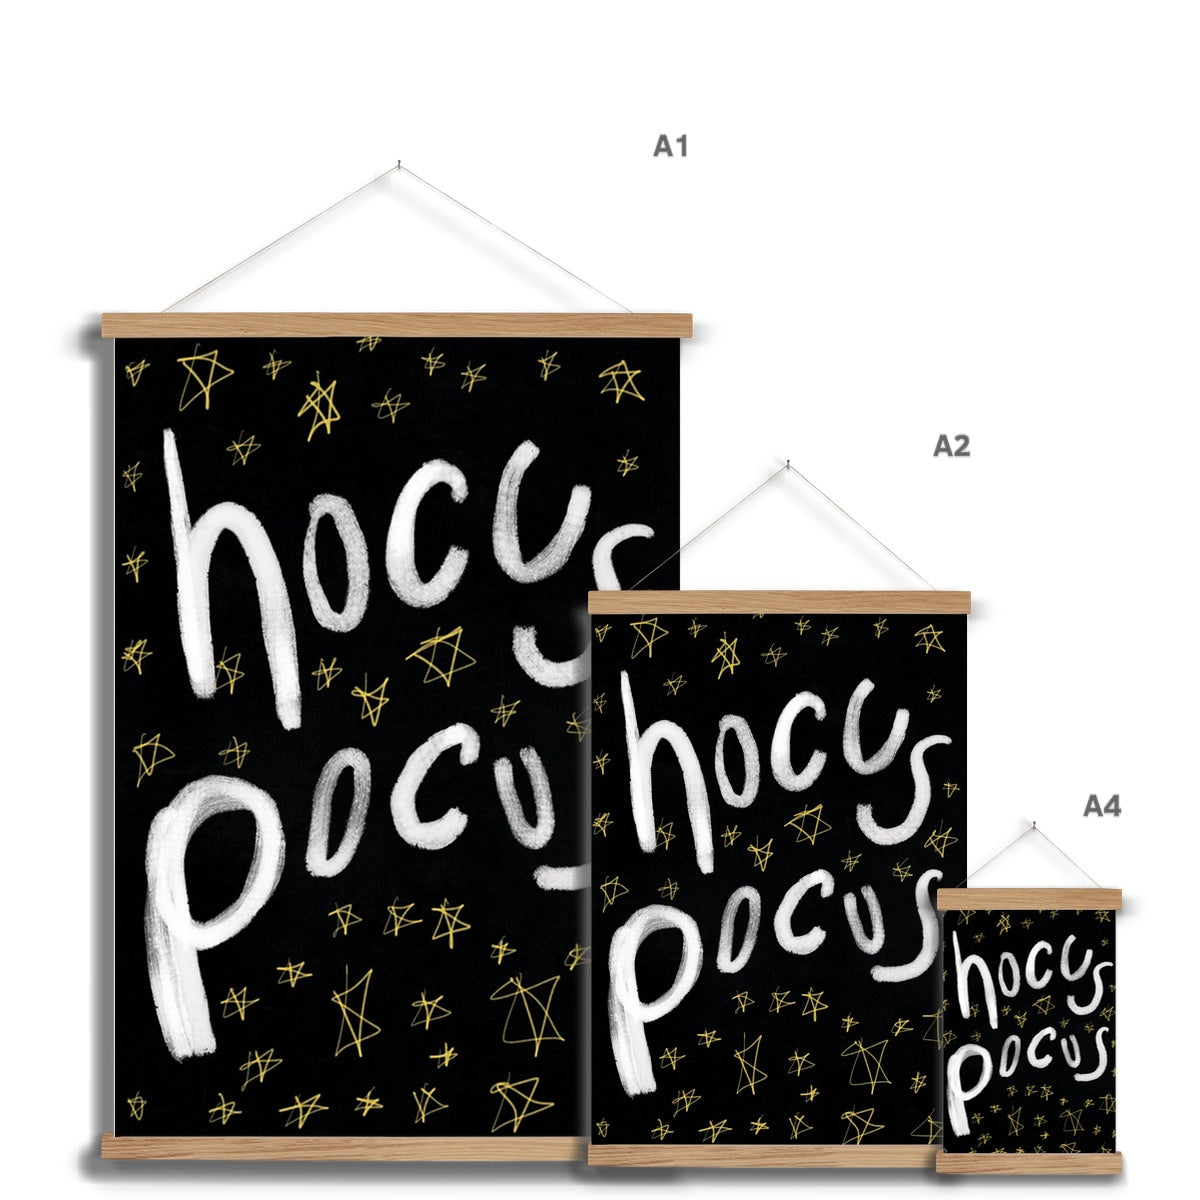 Hocus Pocus Print - Halloween Special Fine Art Print with Hanger